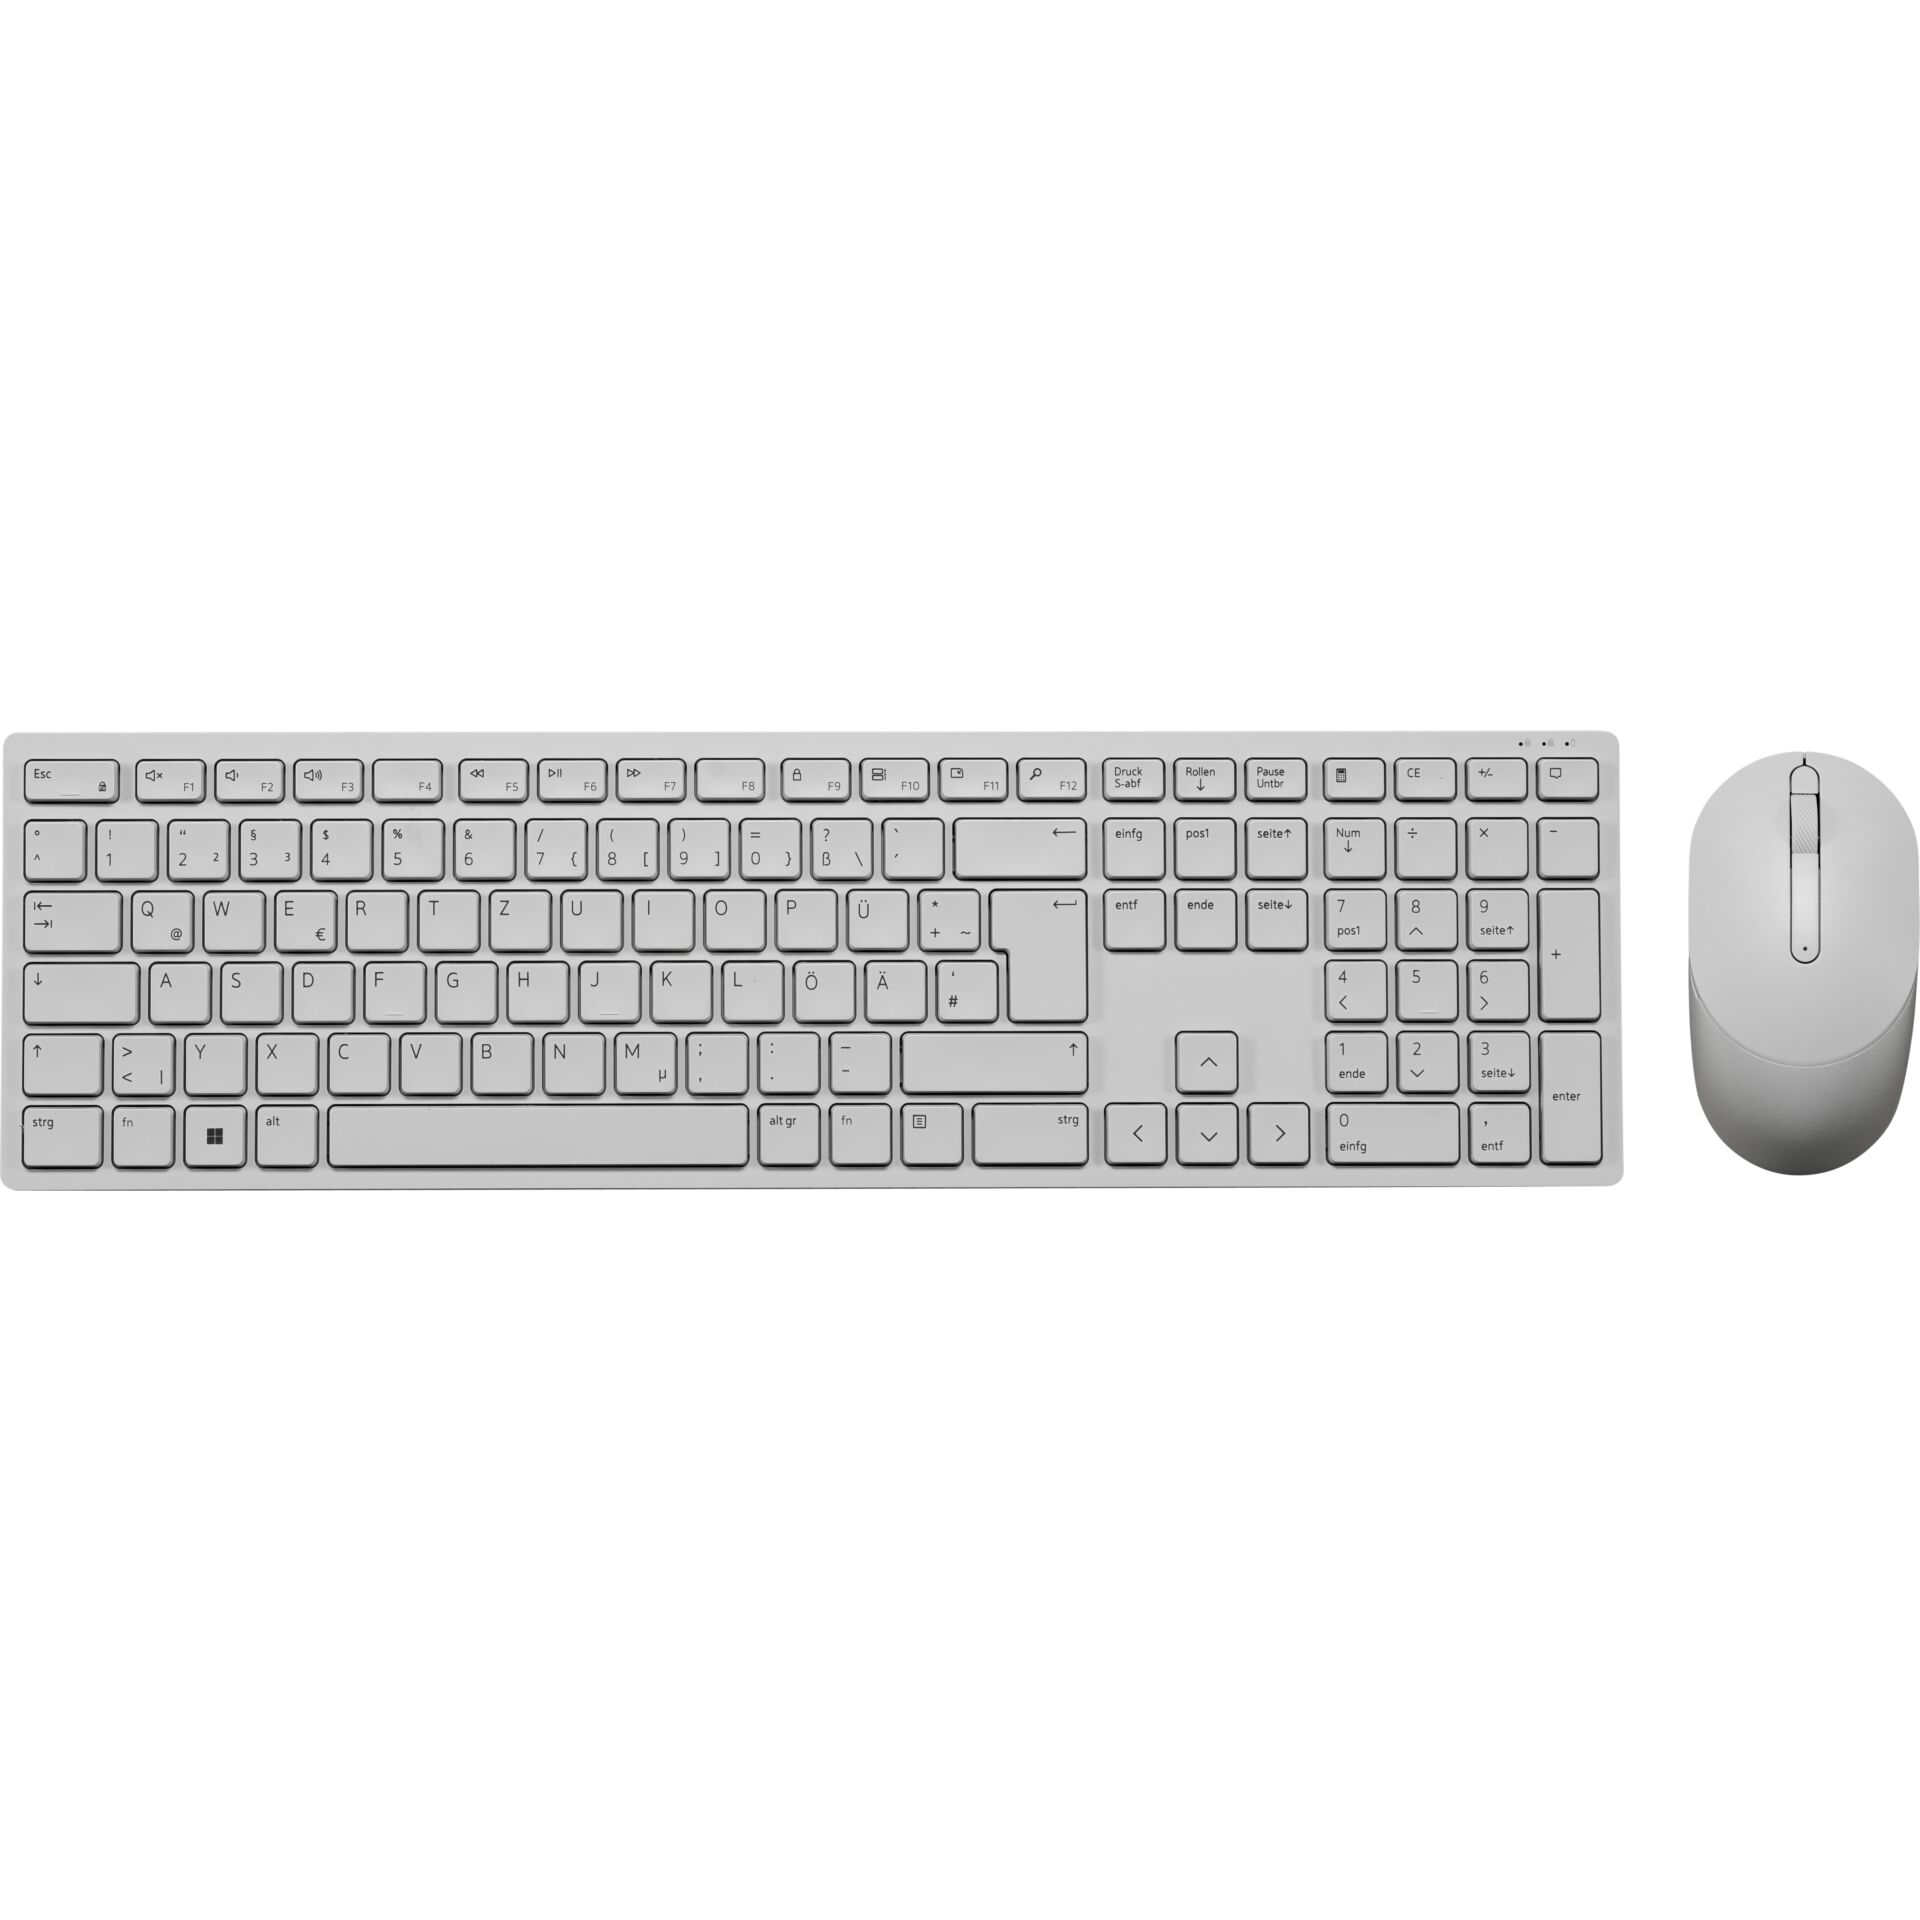 Dell KM5221W Pro Wireless Keyboard and Mouse, Layout: DE, Tastatur